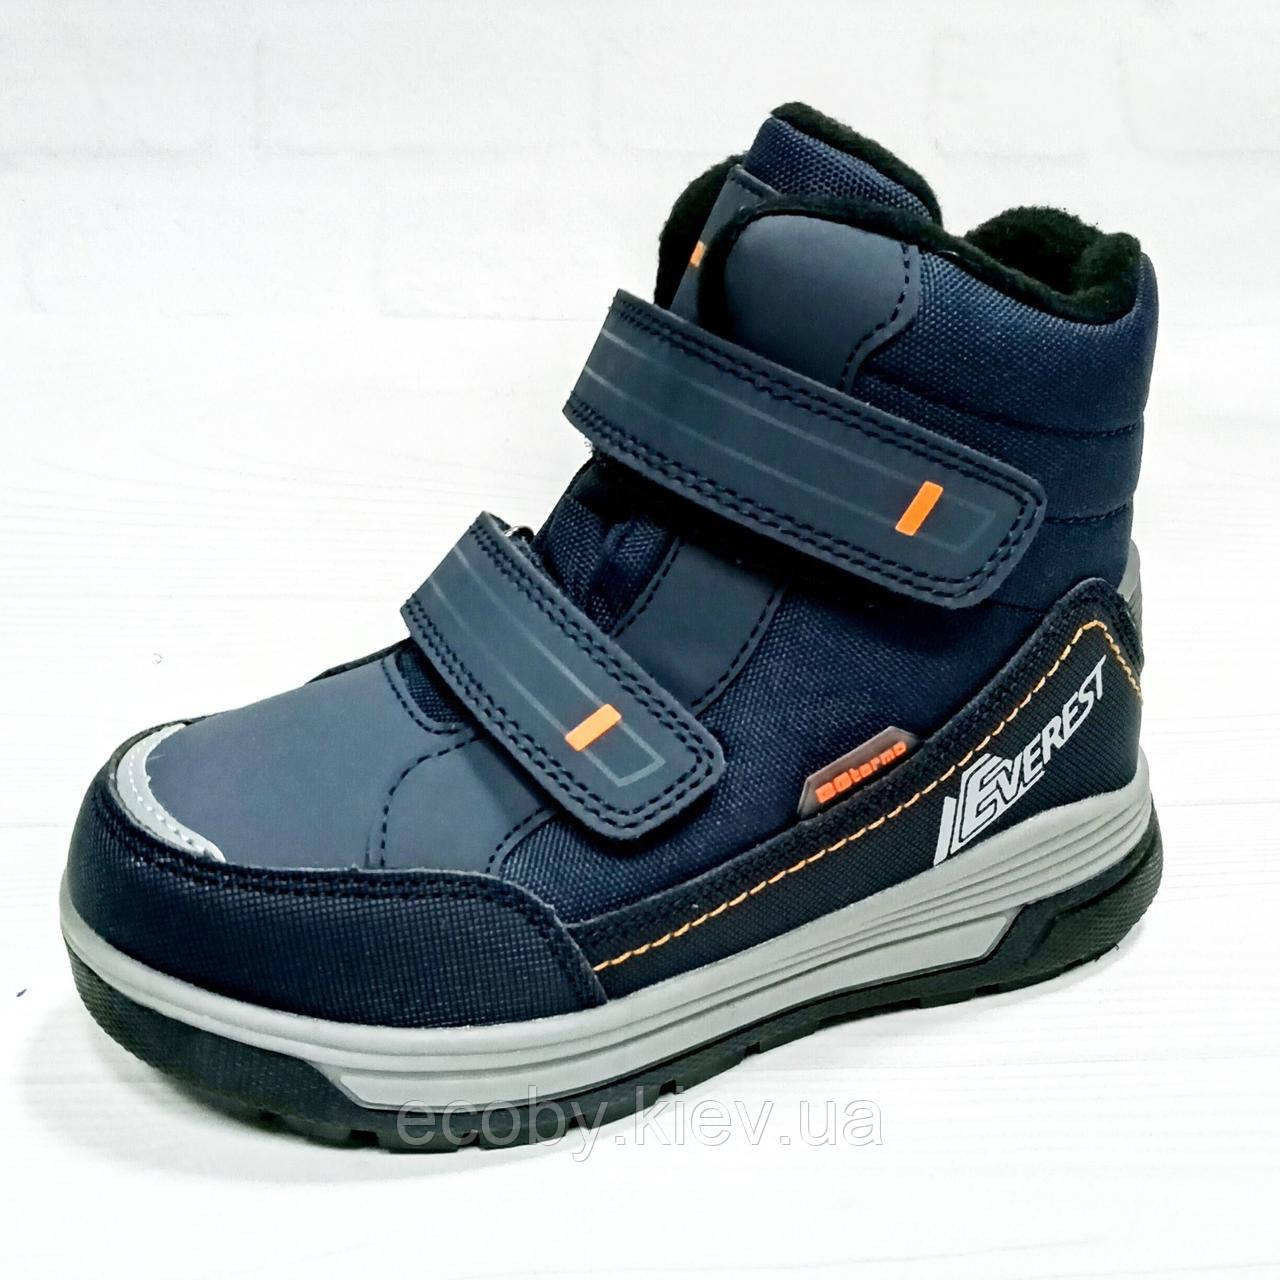 Зимові дитячі черевики, термочеревики для хлопчика тм B&G, розміри 28 - 33, сині. 28р(18.5 см)